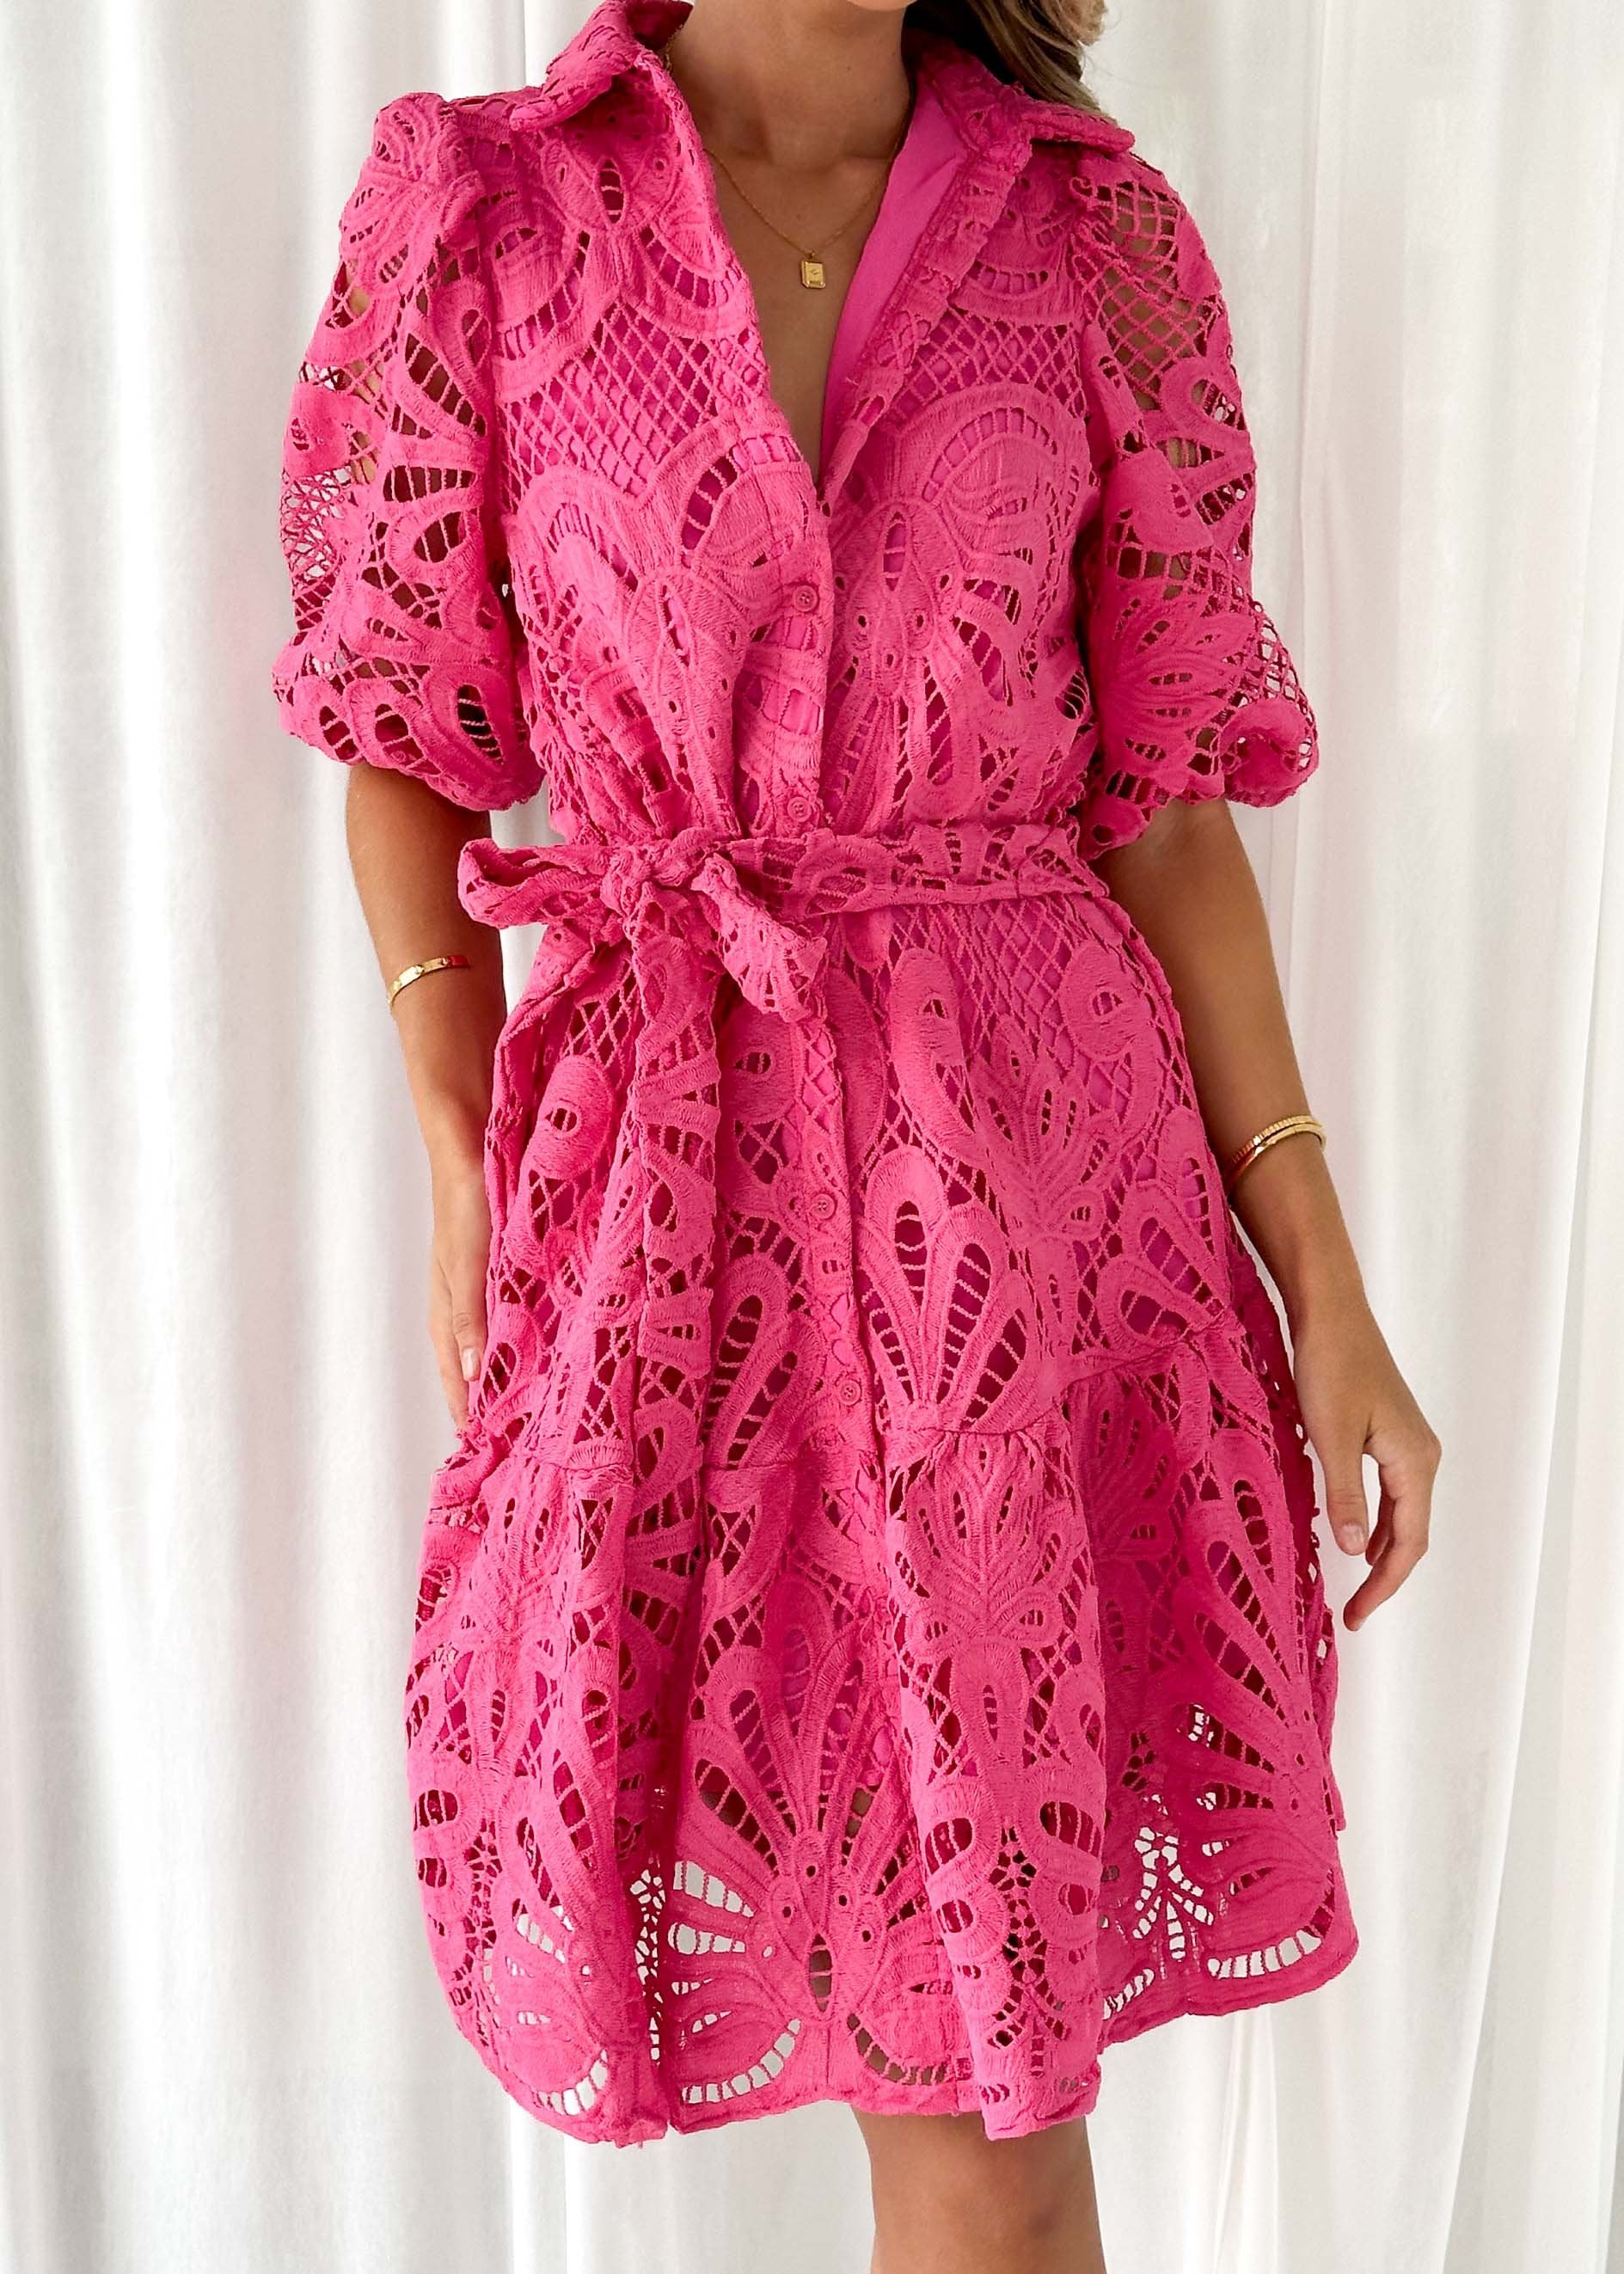 Nence Lace Dress - Hot Pink